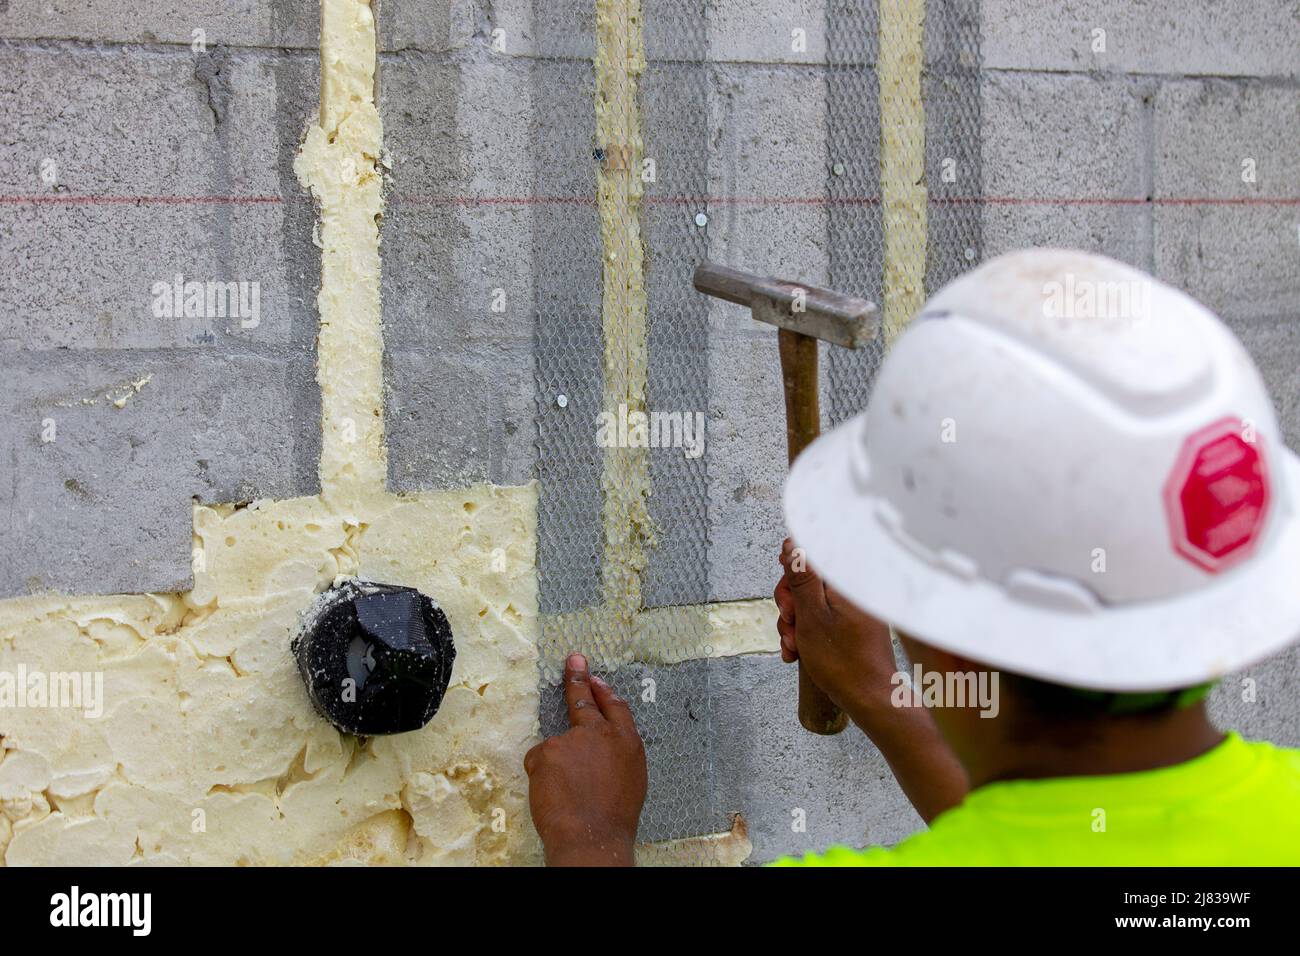 Ein Bauarbeiter befestigt ein Stahlgeflecht für den Stuckauftrag mit einem Hammer und Betonzapfen, um Rohrleitungen zu verbergen Stockfoto